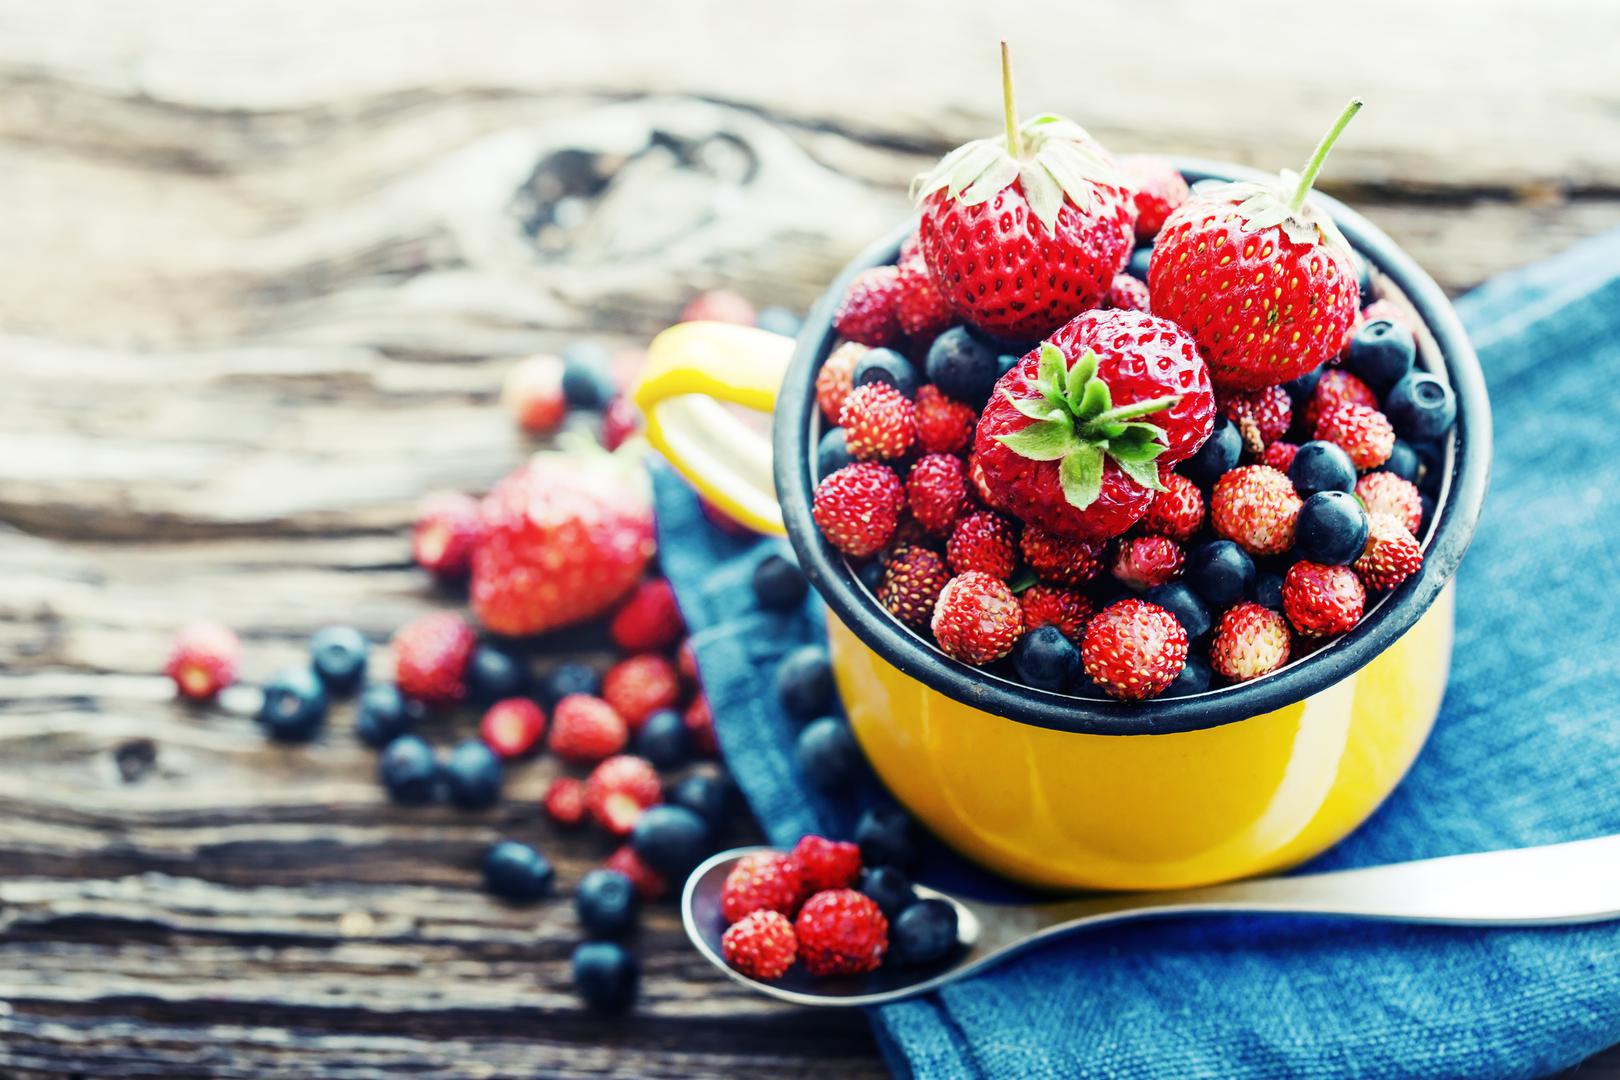 Bobičasto voće: Bobičasto voće, još jedna superhrana bogata hranjivim tvarima, također vam može pomoći da izravnate trbuh. 'Bobičasto voće je prirodni slatkiš, savršeno za grickanje, kao preljev za desert ili umiješano u smoothieje', kaže Monrose, 'Njihov sadržaj vlakana pomaže u sitosti i zdravlju probave, dok njihovi antioksidansi mogu pomoći u smanjenju upale, koja je često povezana s debljanjem i nadutošću'.